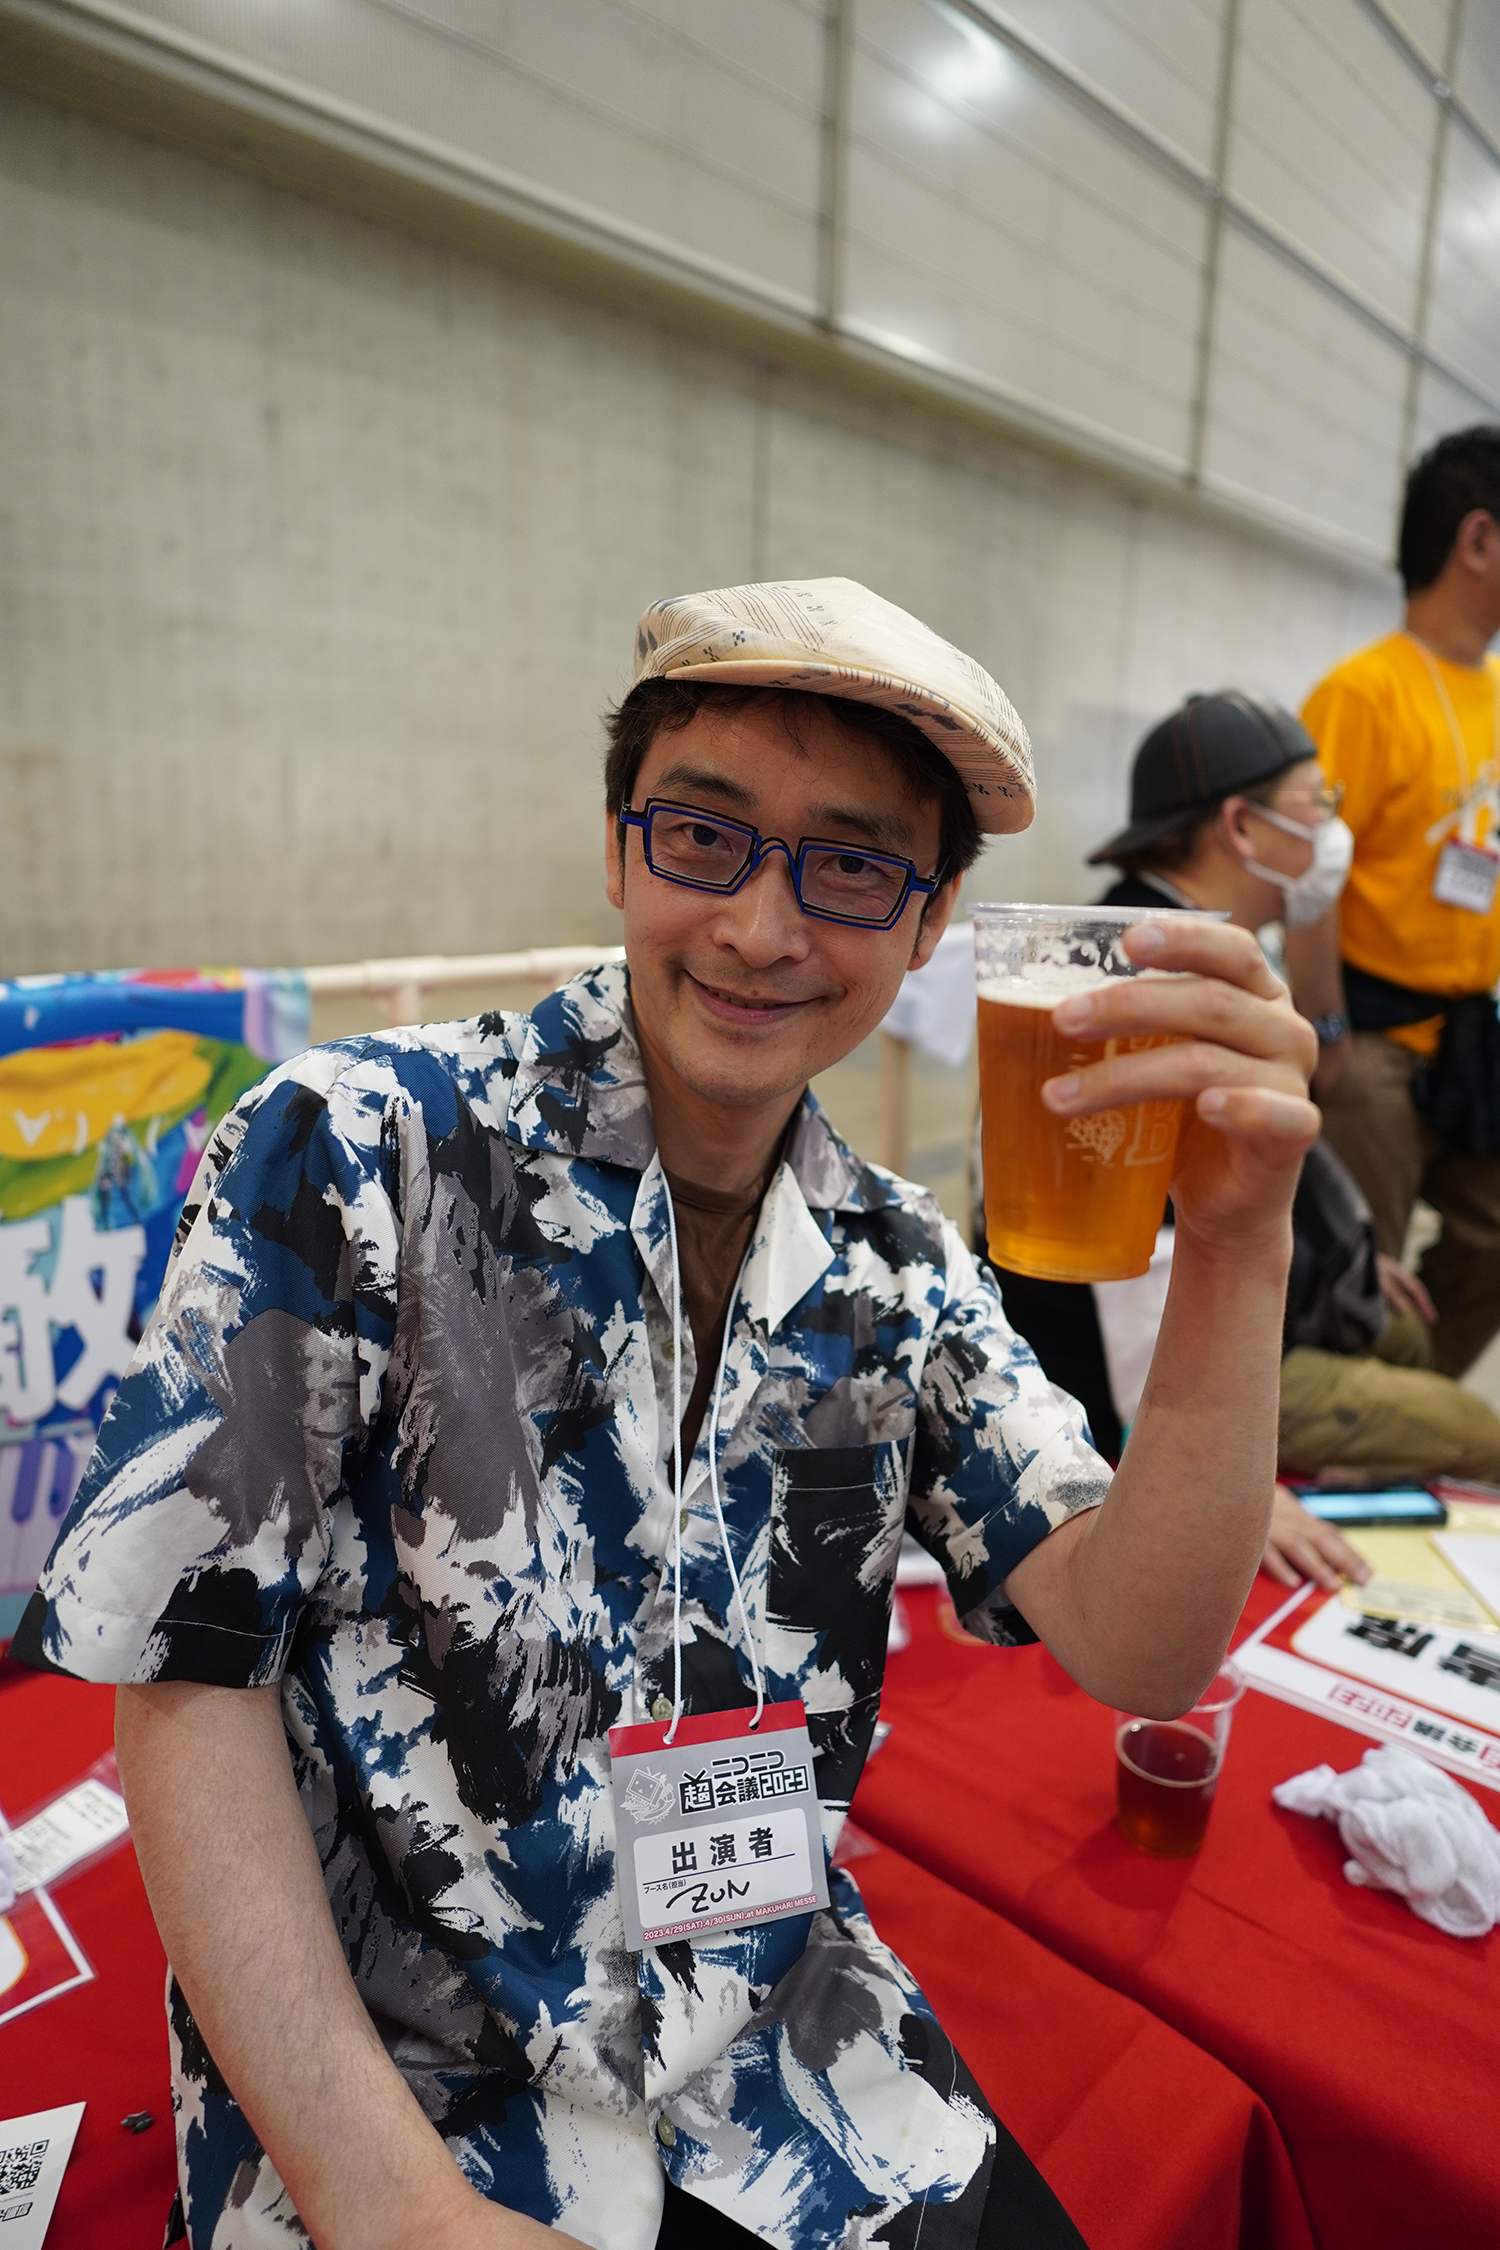 ニコニコ超会議 ZUNビール